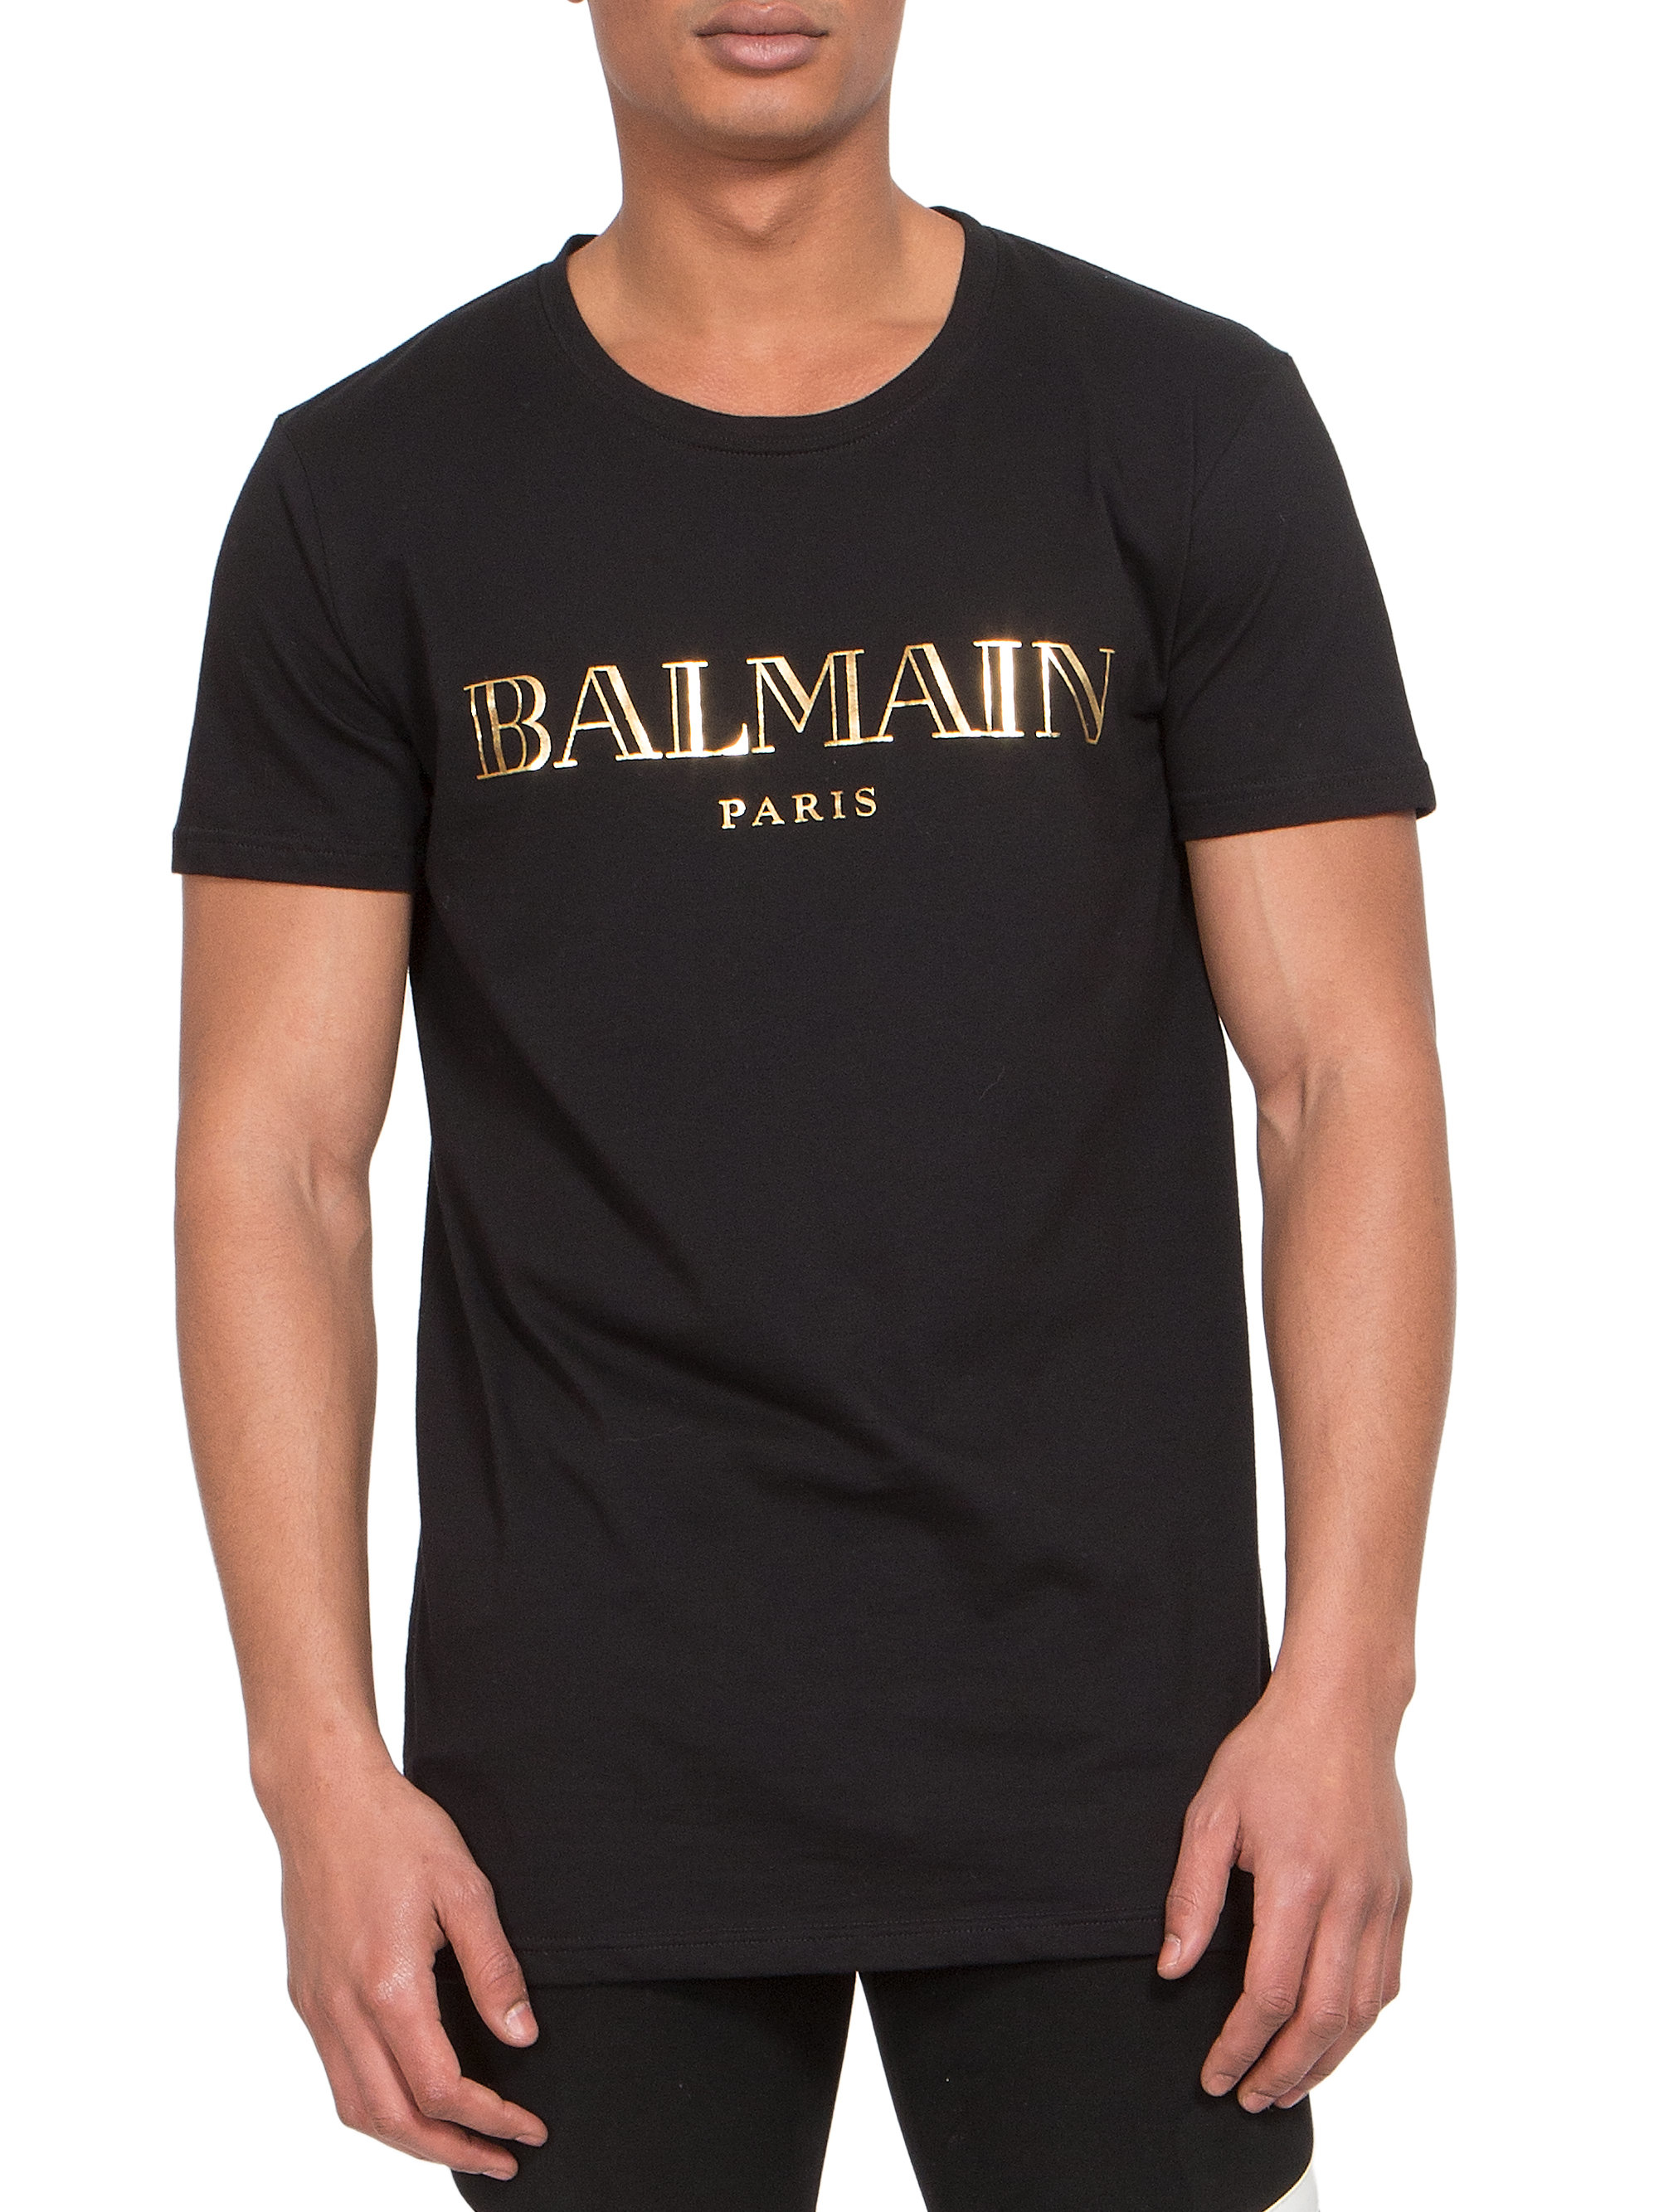 Balmain Shirt For Men Hotsell, 59% OFF | www.hcb.cat